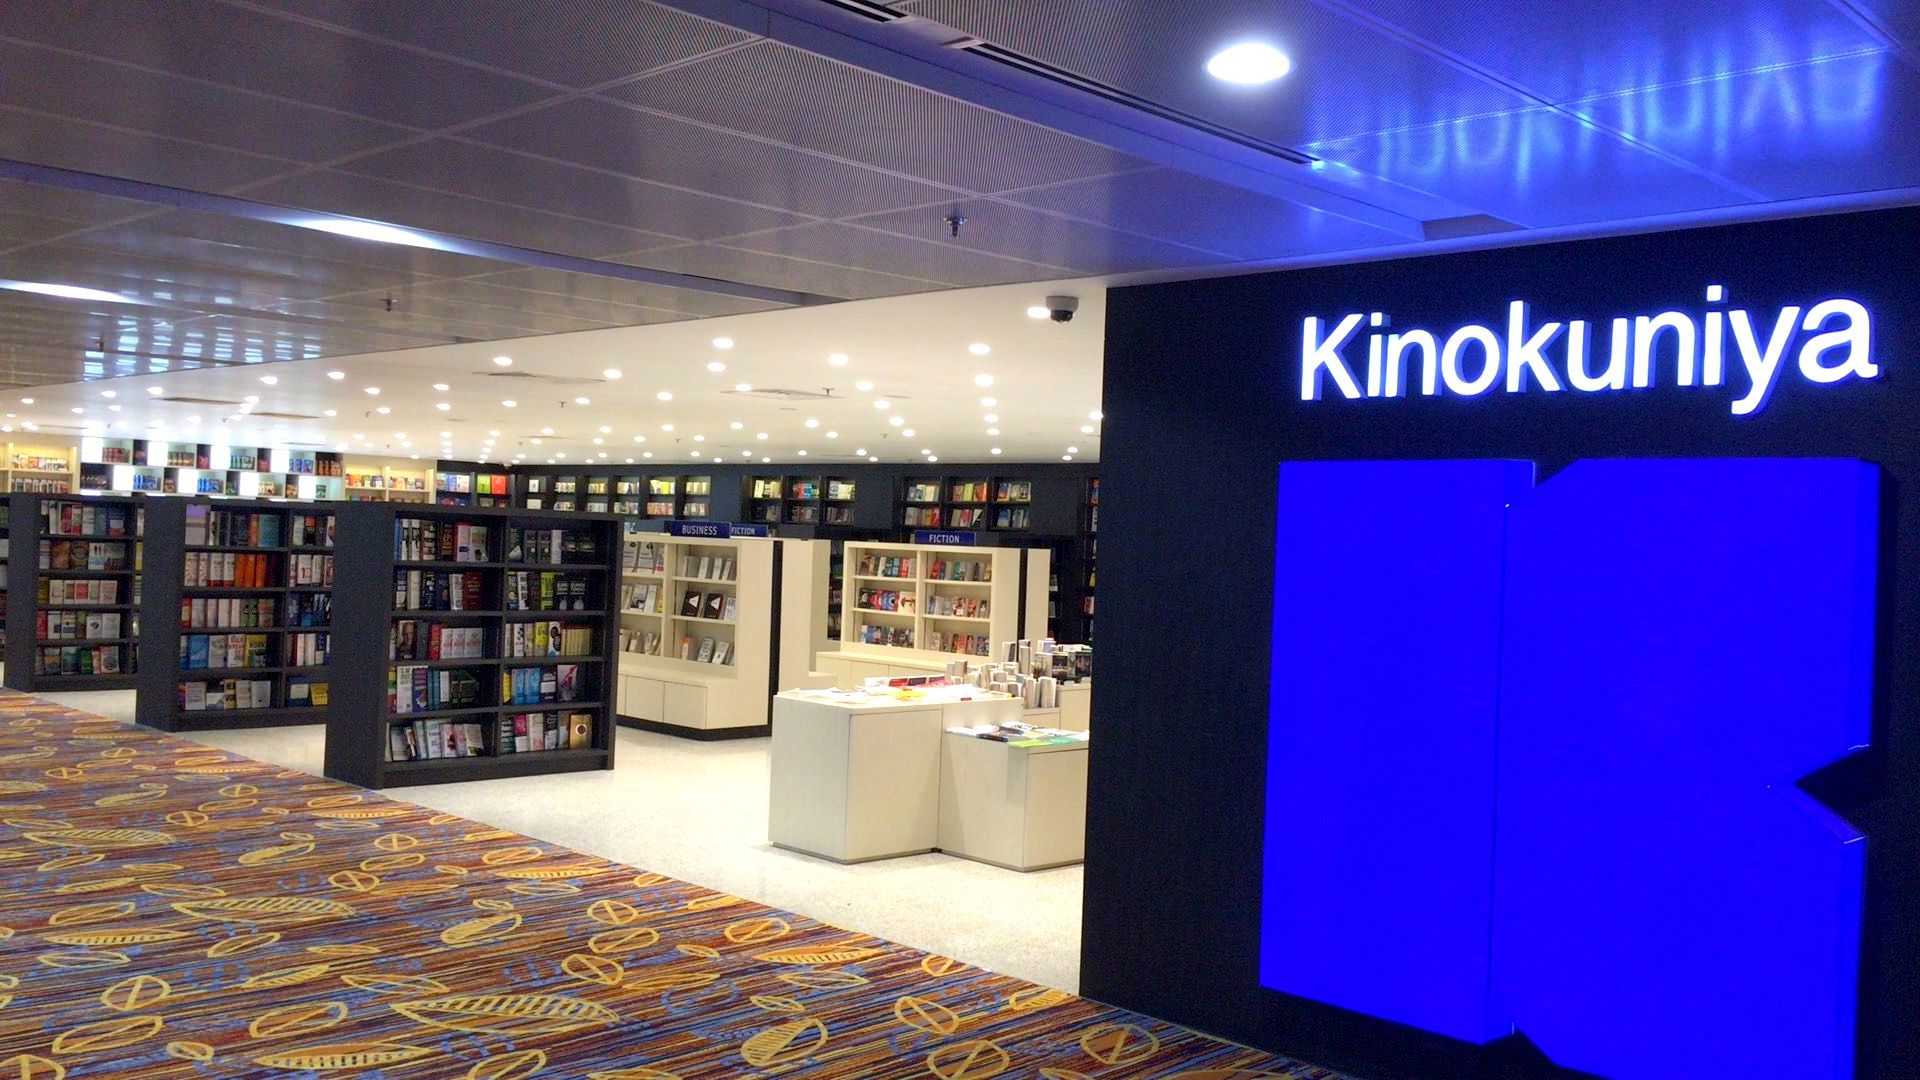 ヤンゴン国際空港の新ターミナルに出来た紀伊国屋書店